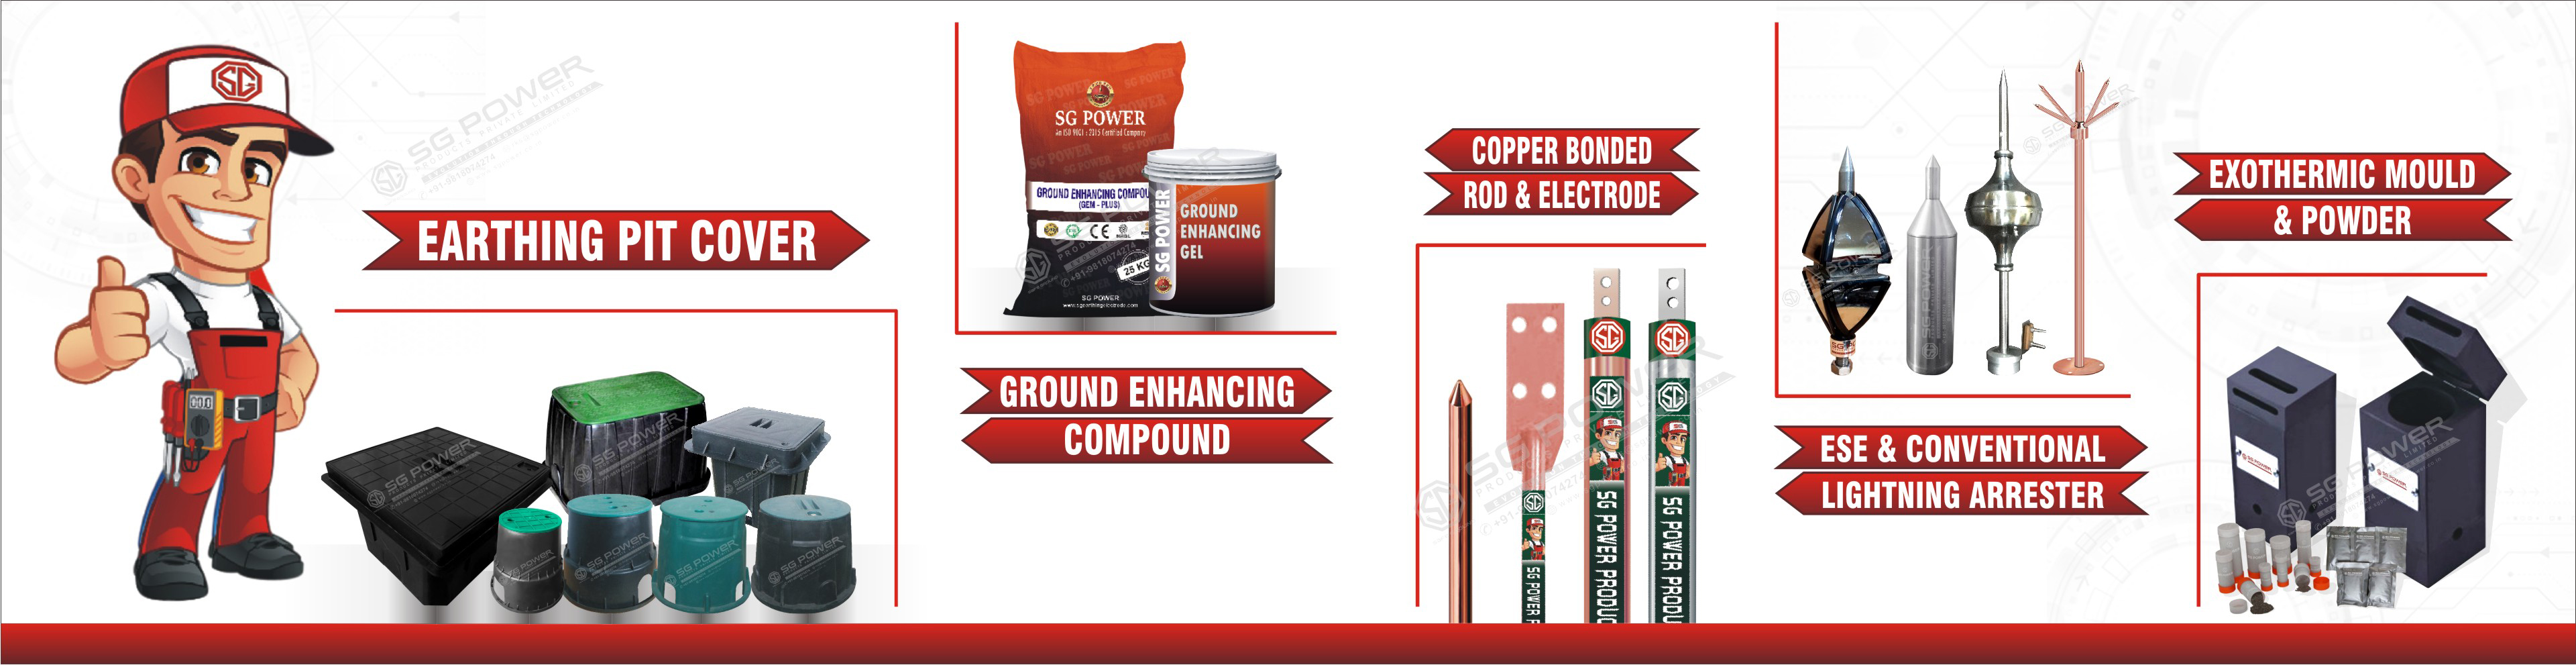 Copper Bonded Rods Manufacturer